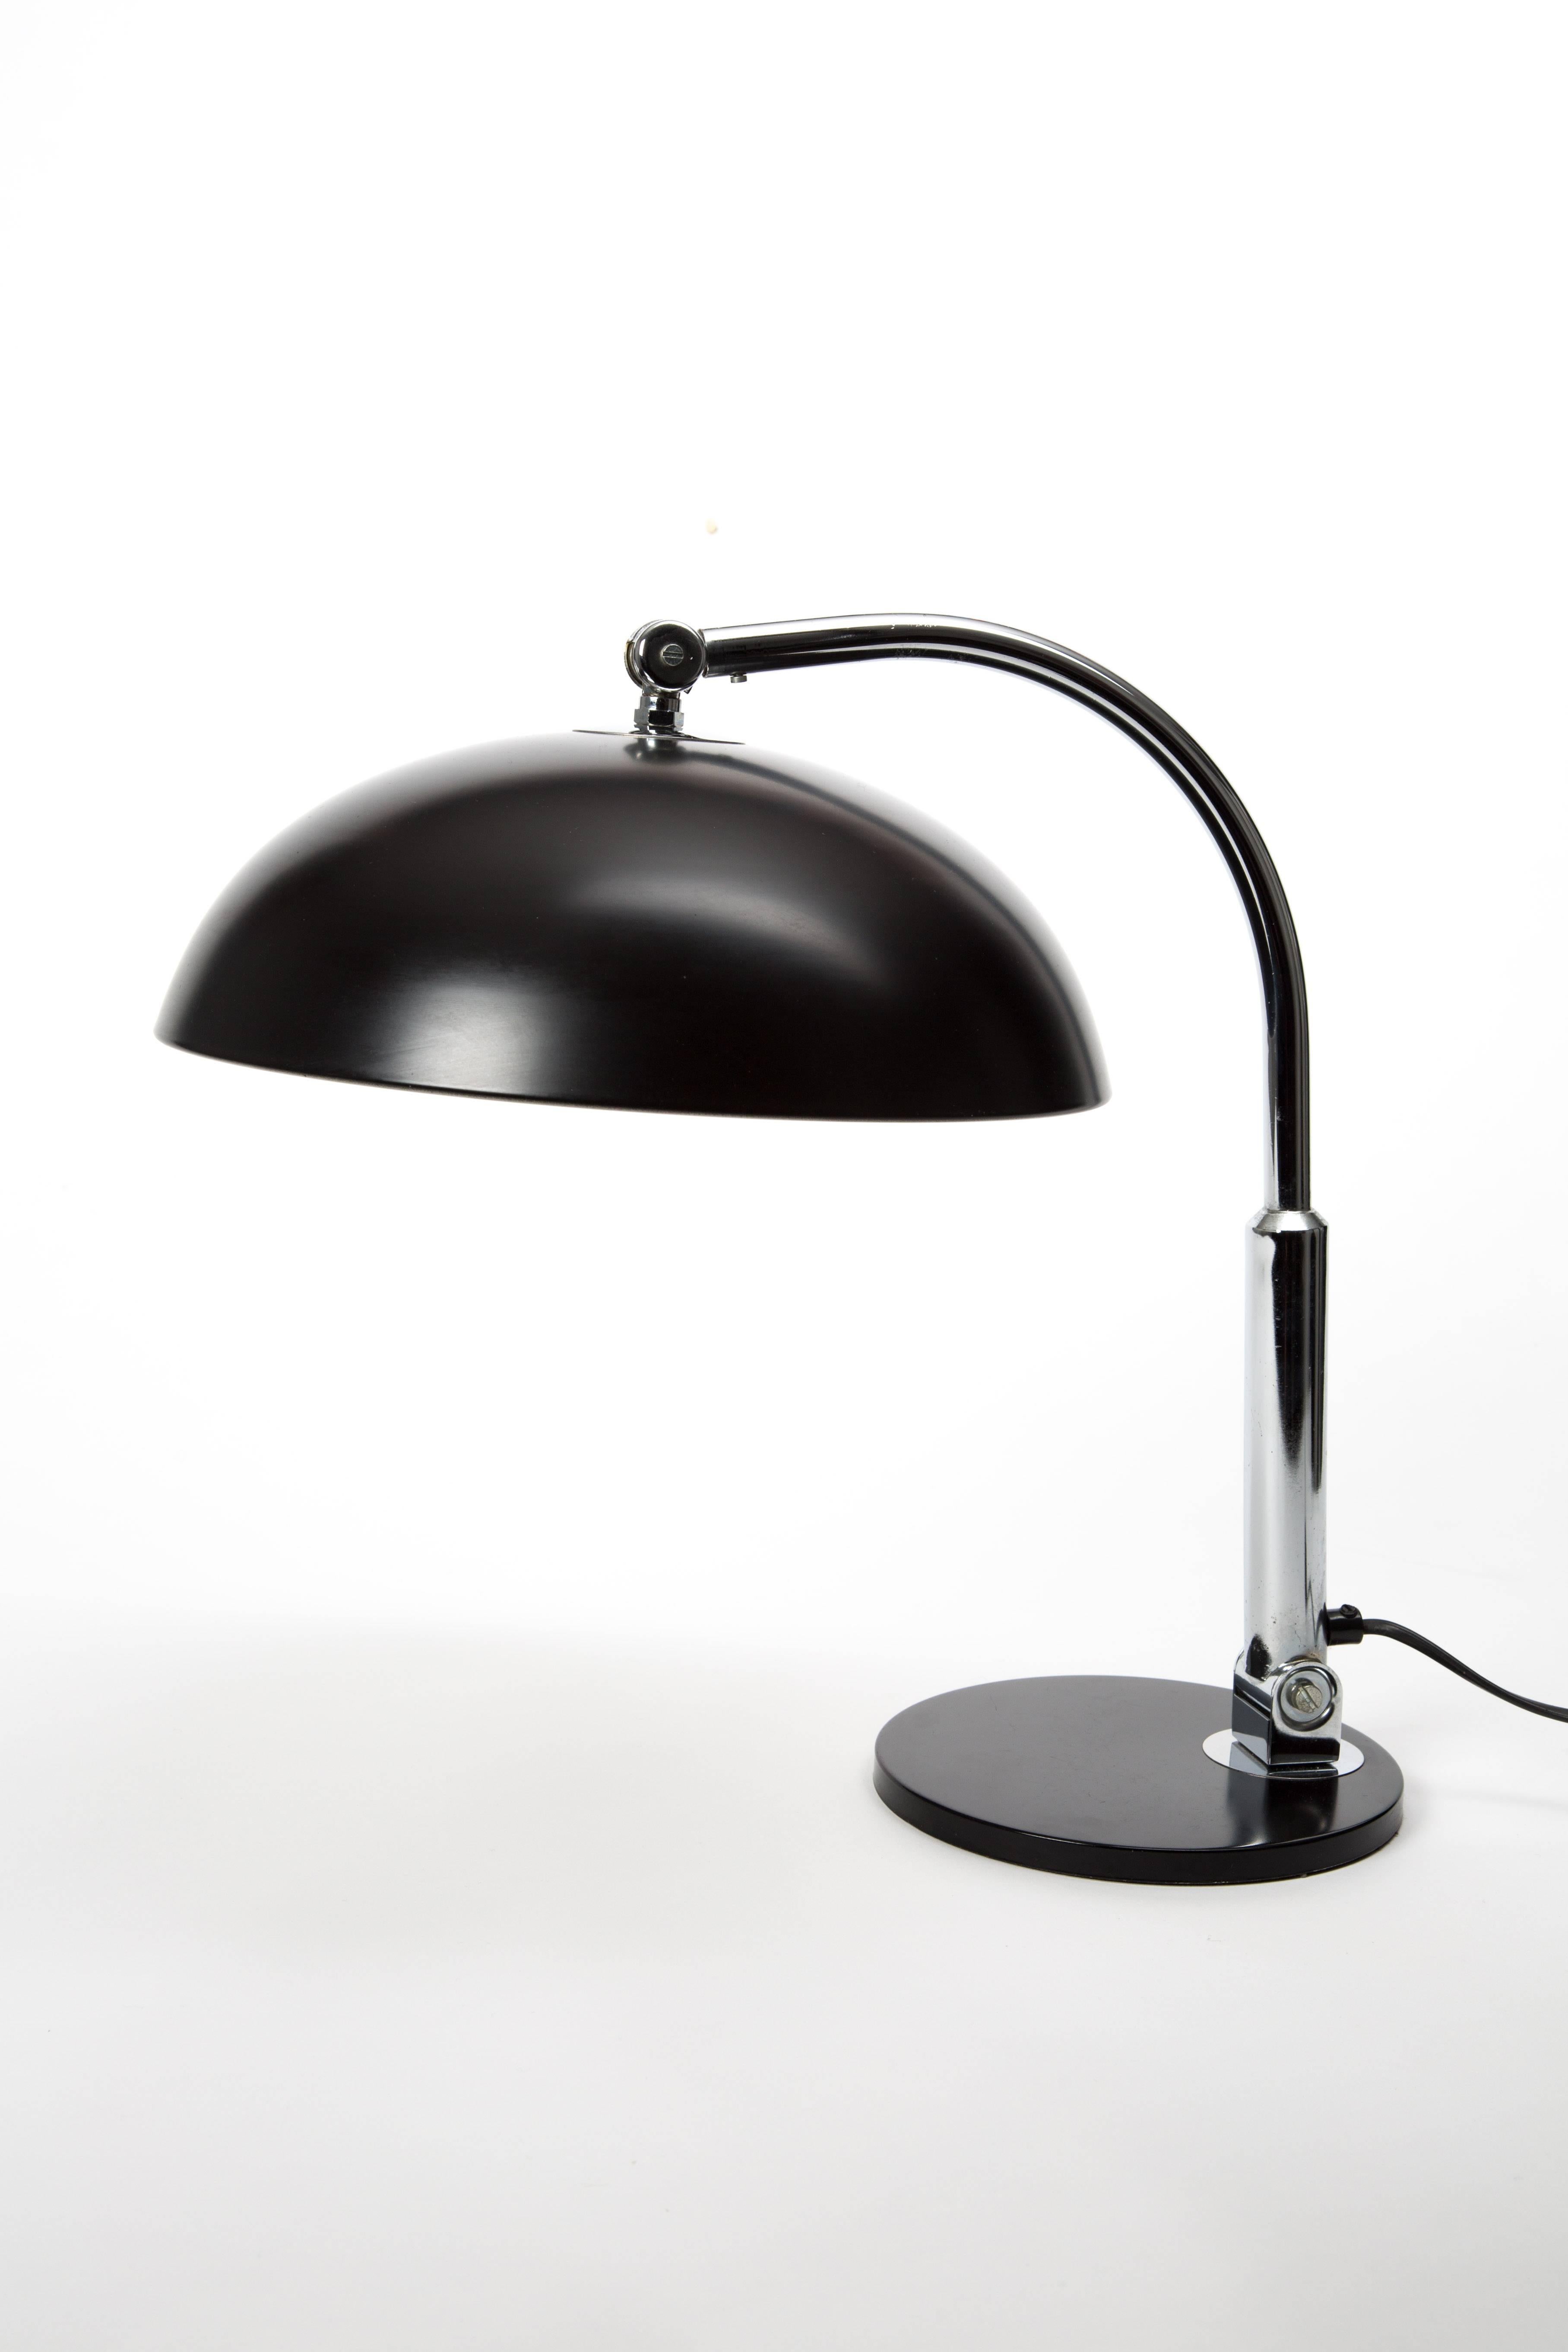 Dutch Hala Zeist Table Lamp by J Busquet Black Desk Lamp